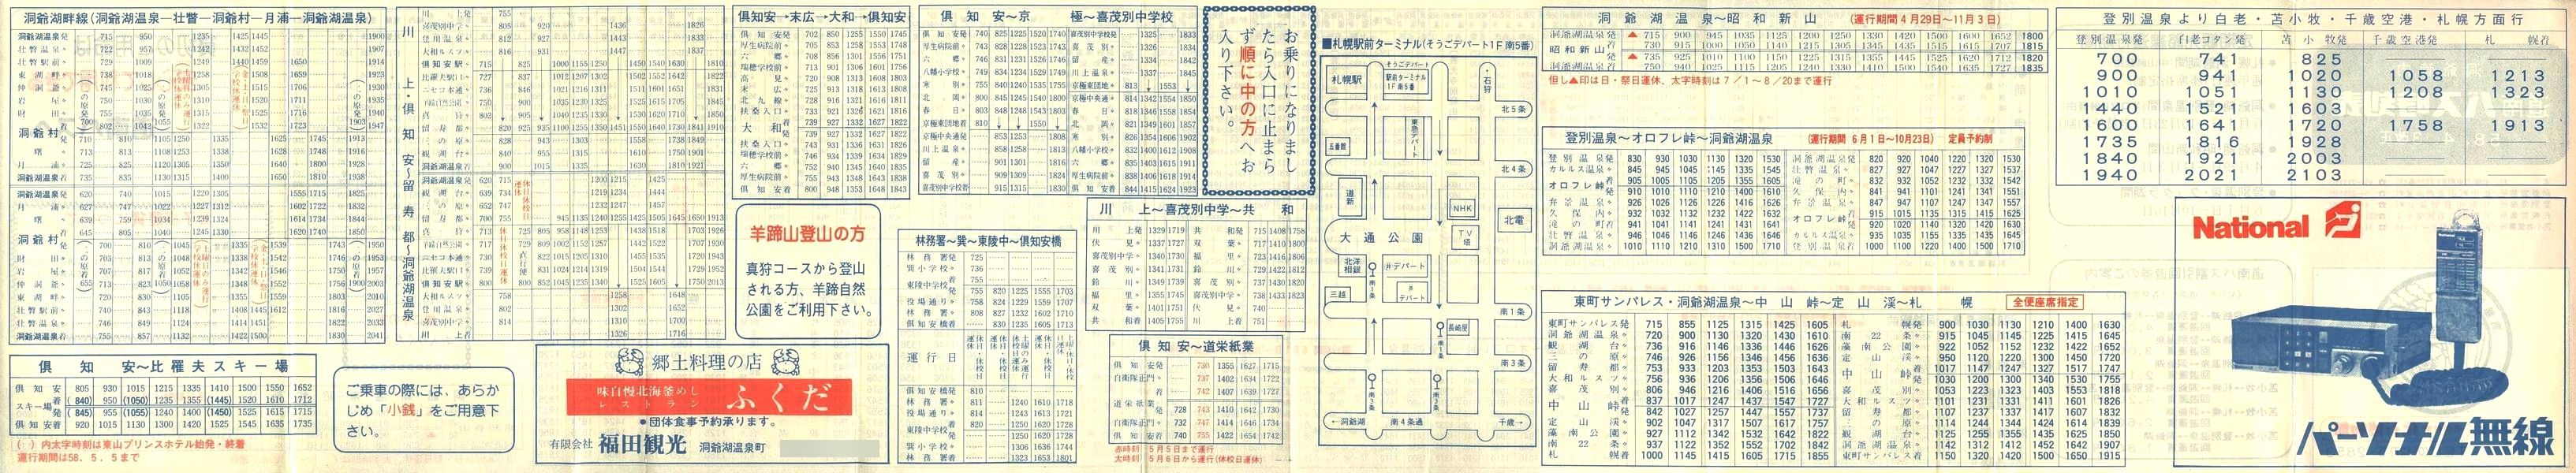 1983-04-03改正_道南バス_洞爺管内時刻表裏面